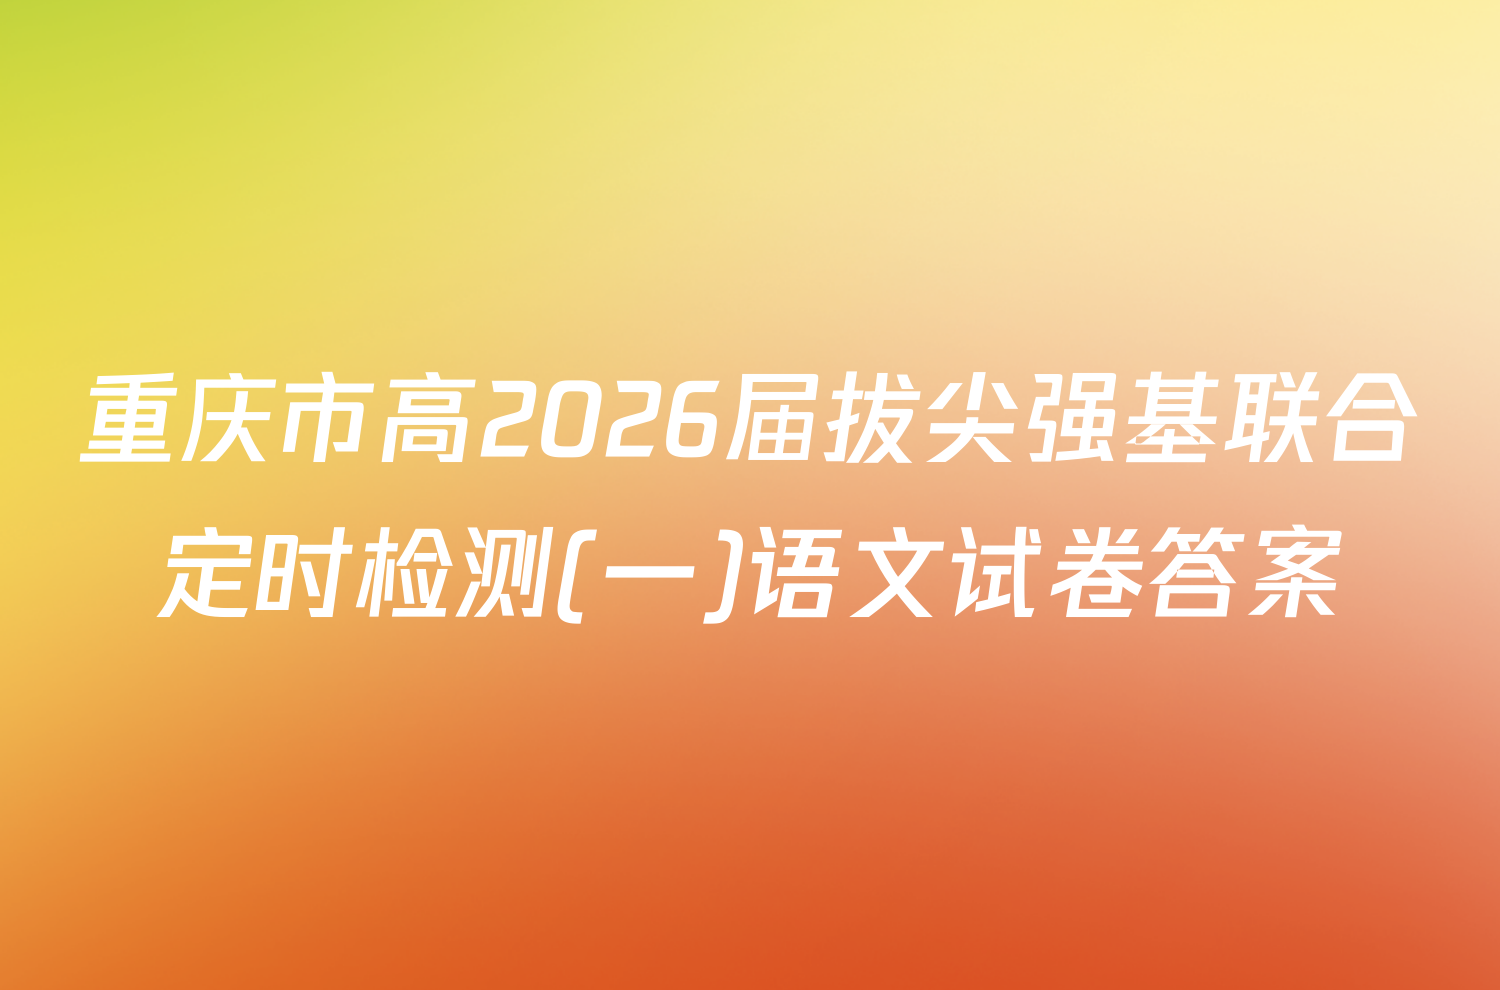 重庆市高2026届拔尖强基联合定时检测(一)语文试卷答案